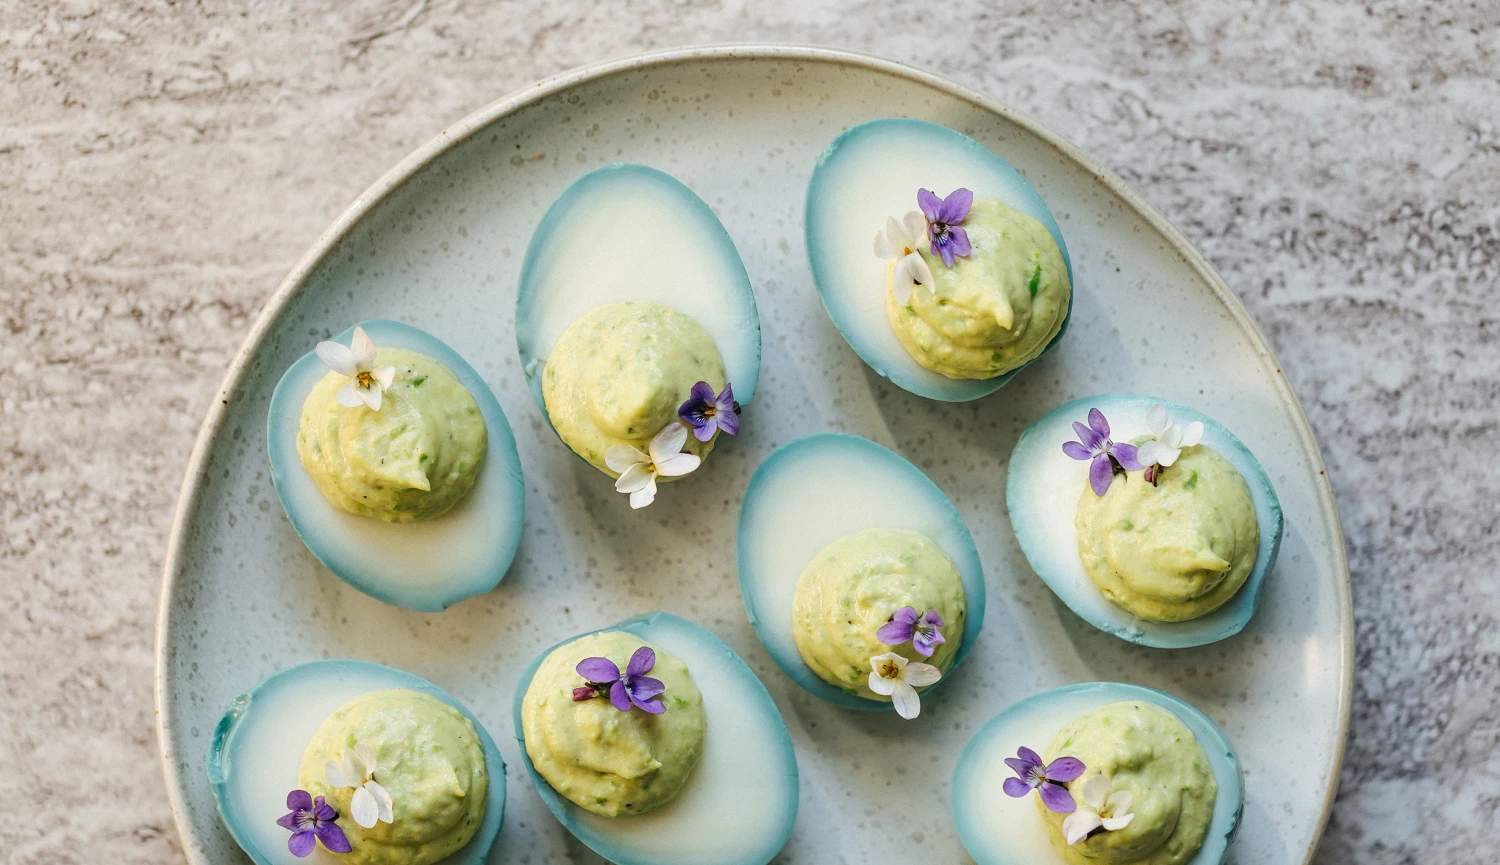 Velikonoční zero waste recept jako vtipný finger food: vejce naložte & naplňte